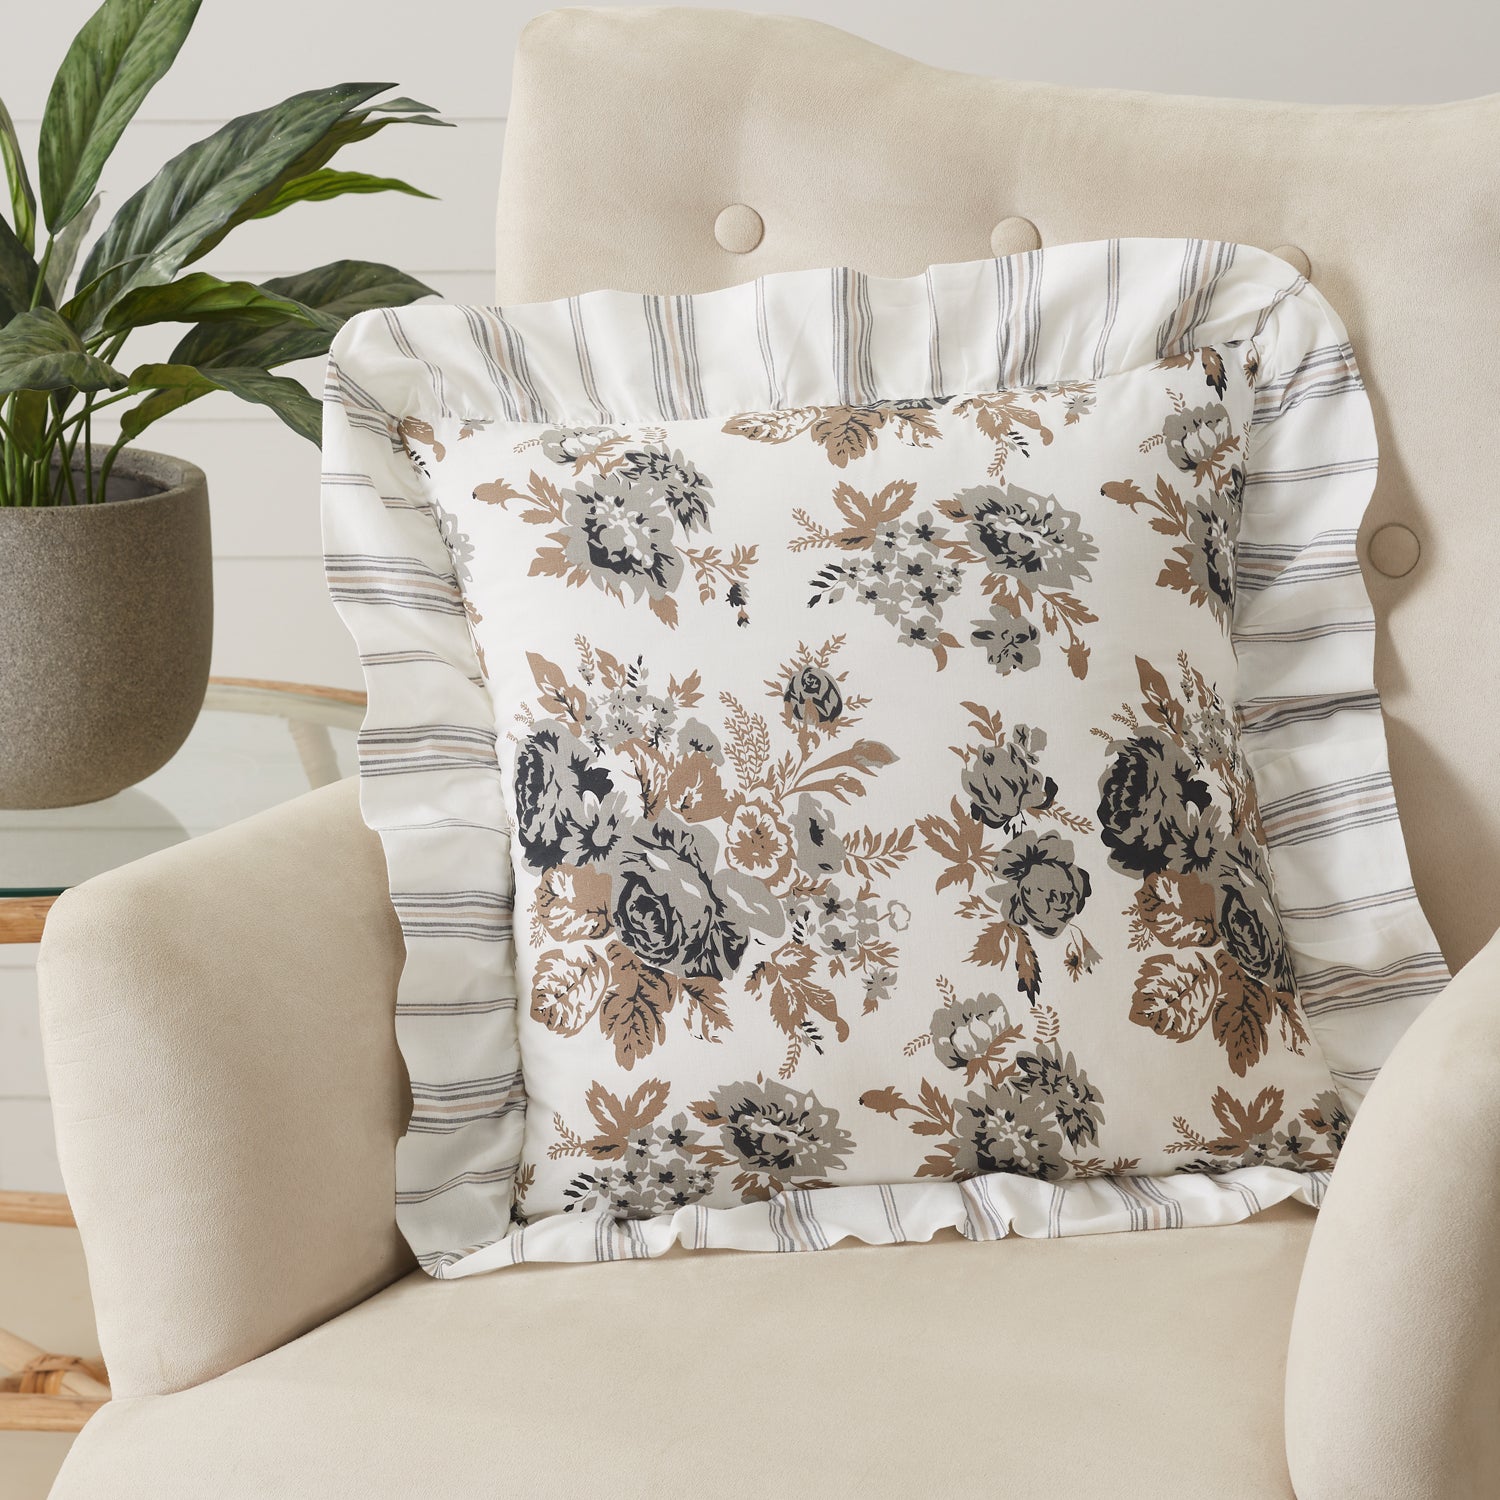 Annie Portabella Floral Ruffled Pillow - 18x18